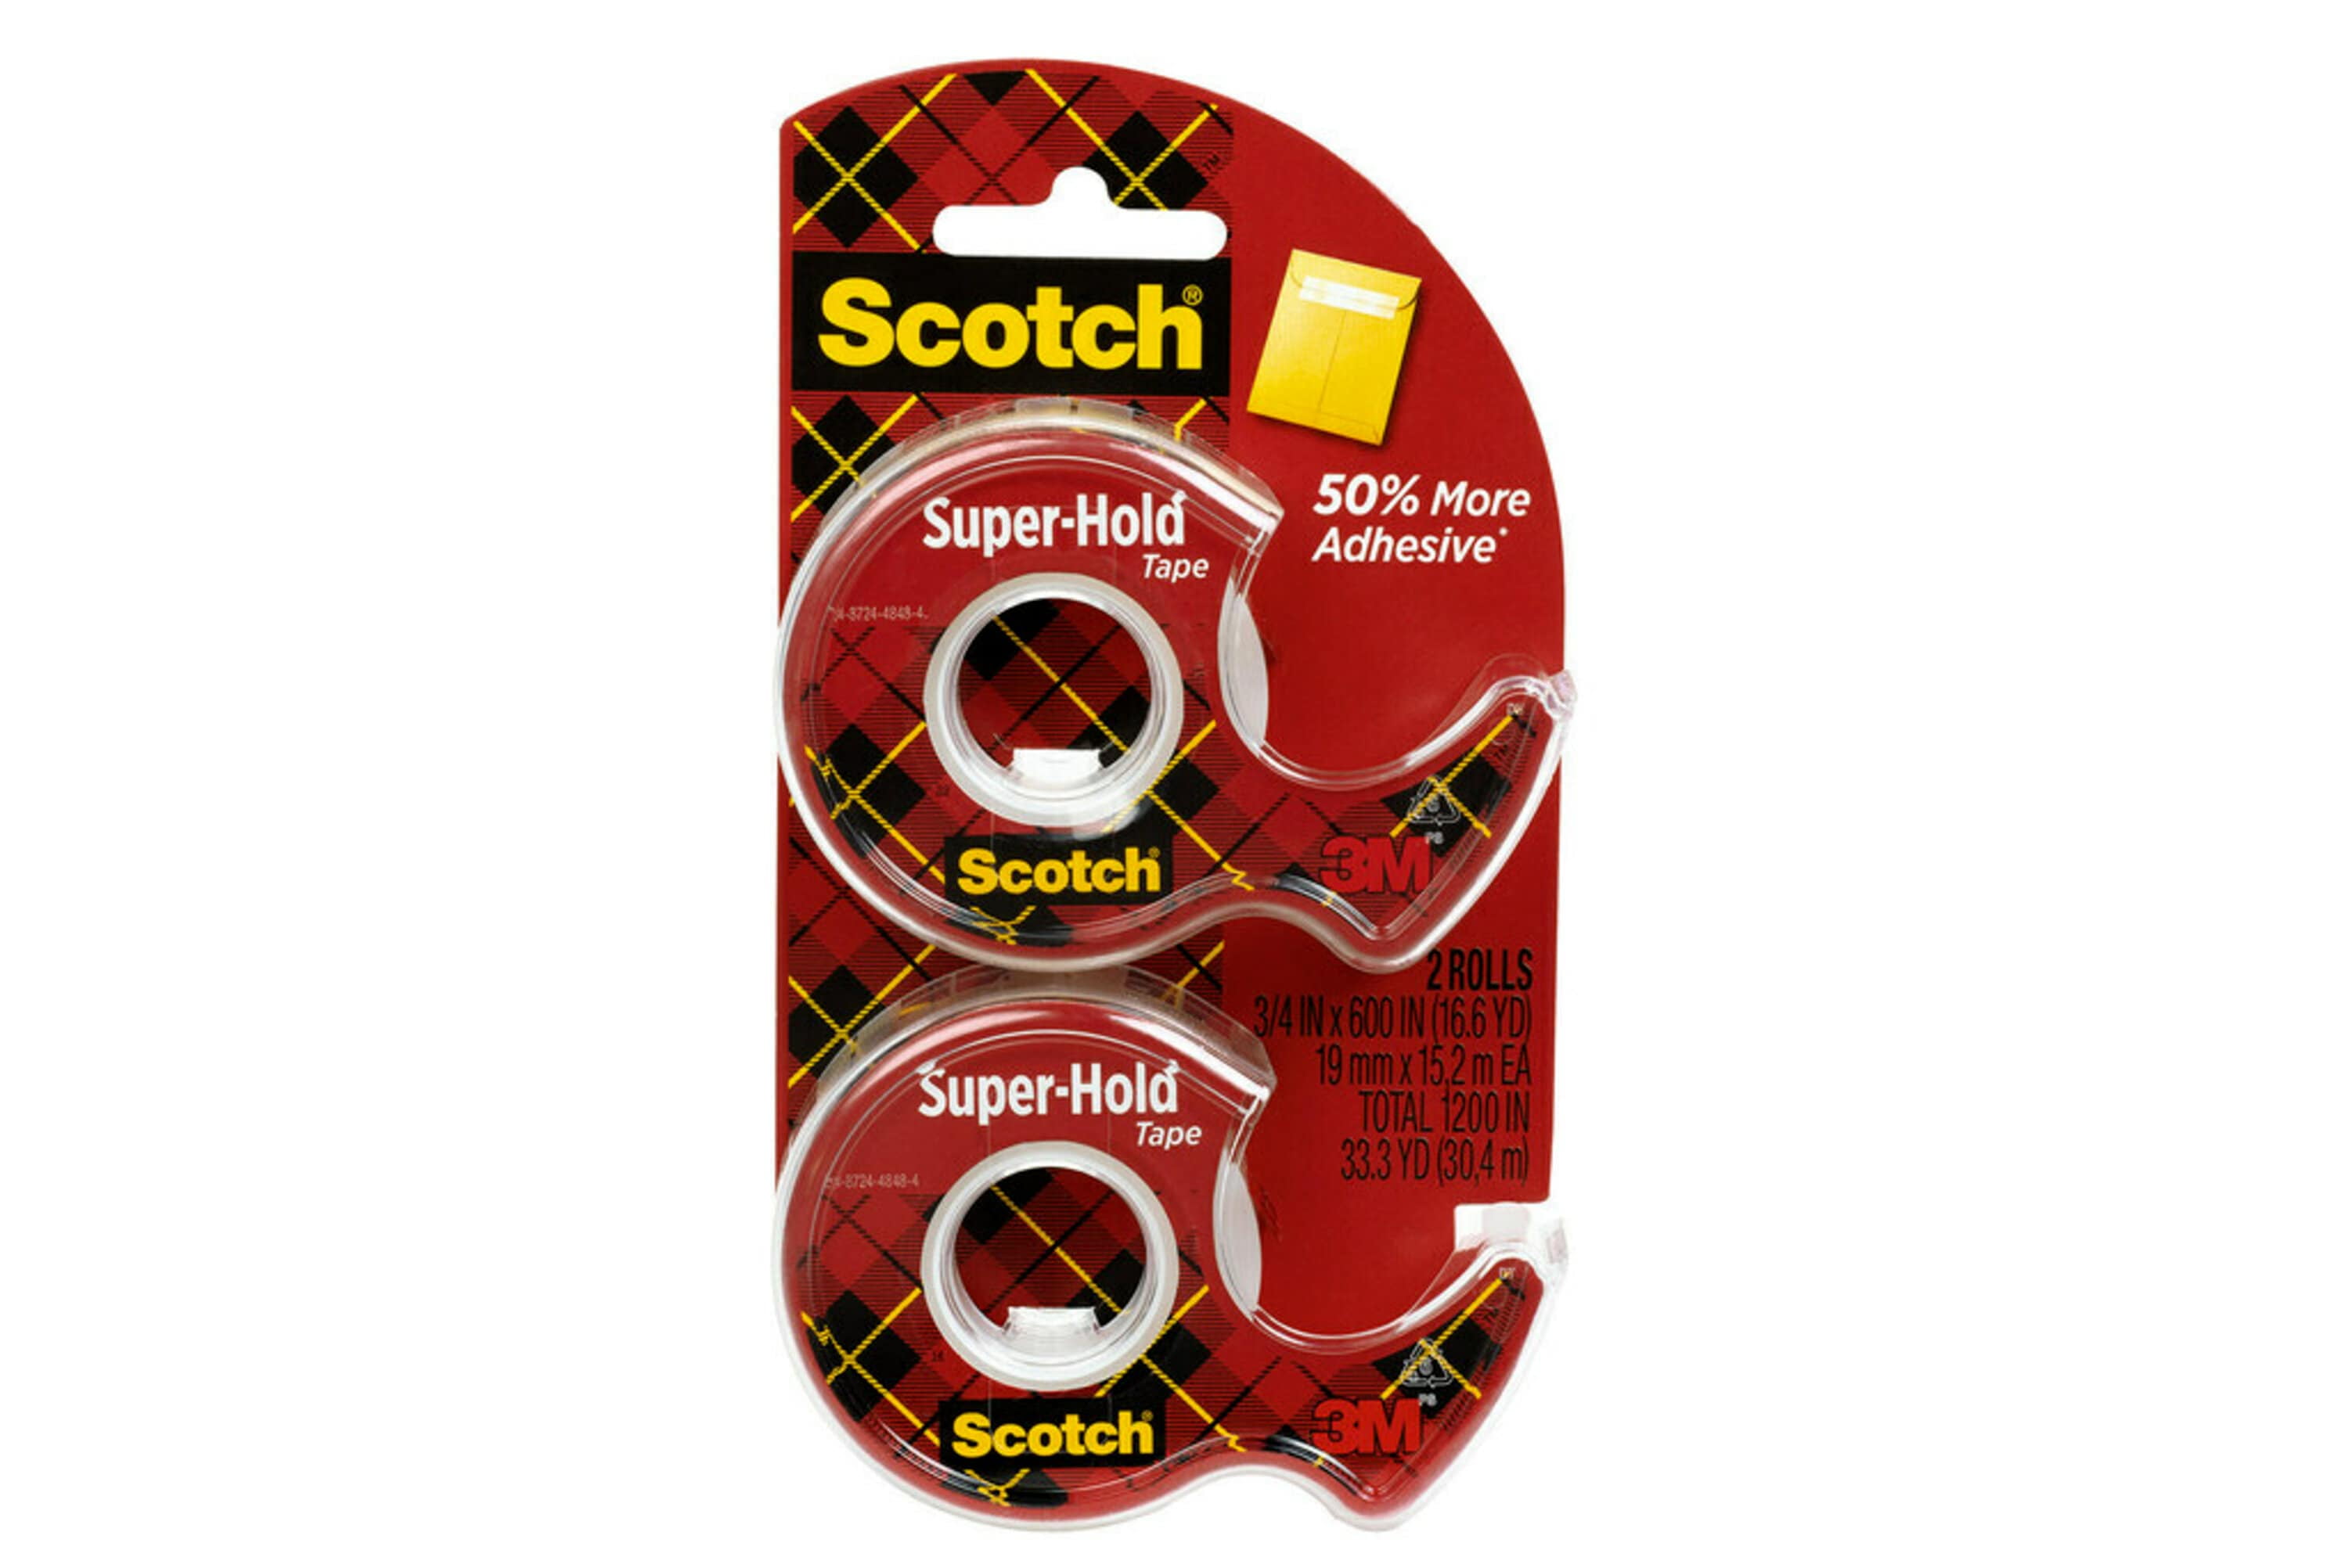 Scotch Super-Hold Tape Dispenser, 3/4in x 600in, 2 Dispensers